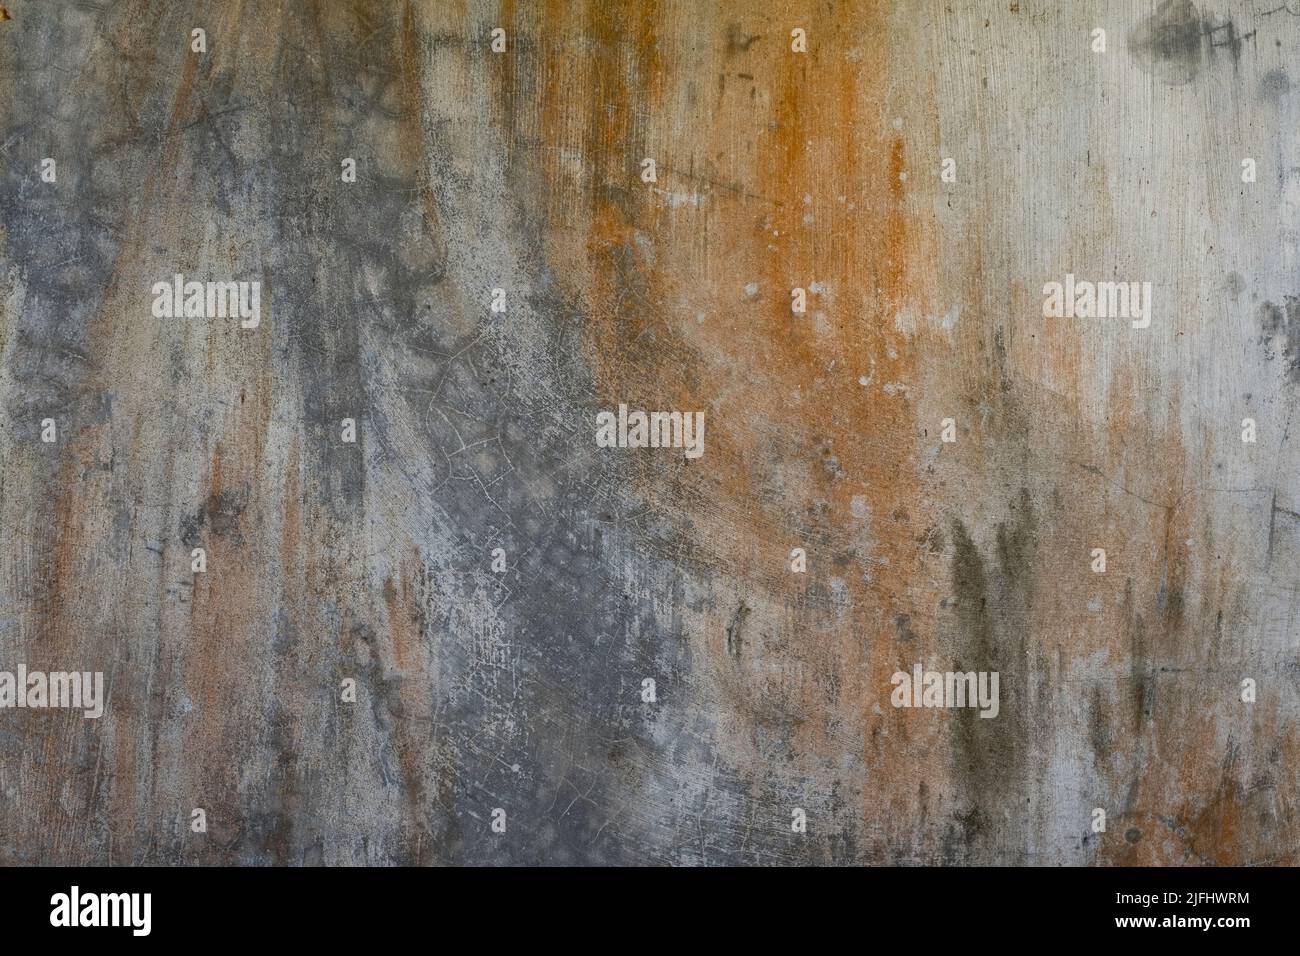 Pared de cemento de color crema sucia con manchas de color óxido y textura de fondo Foto de stock